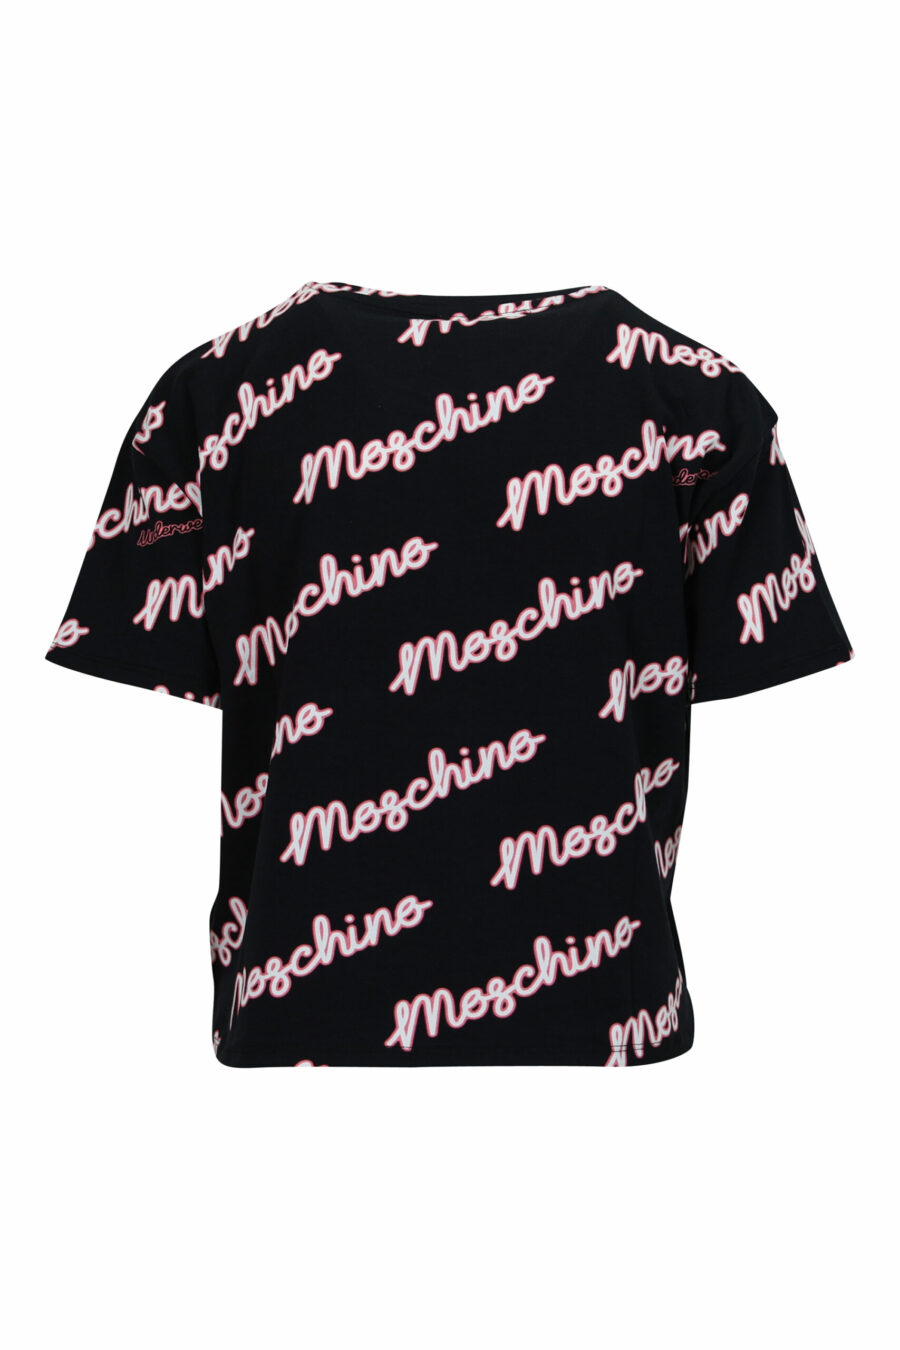 T-shirt preta com "logotipo moschino" fúcsia - 108037 em escala